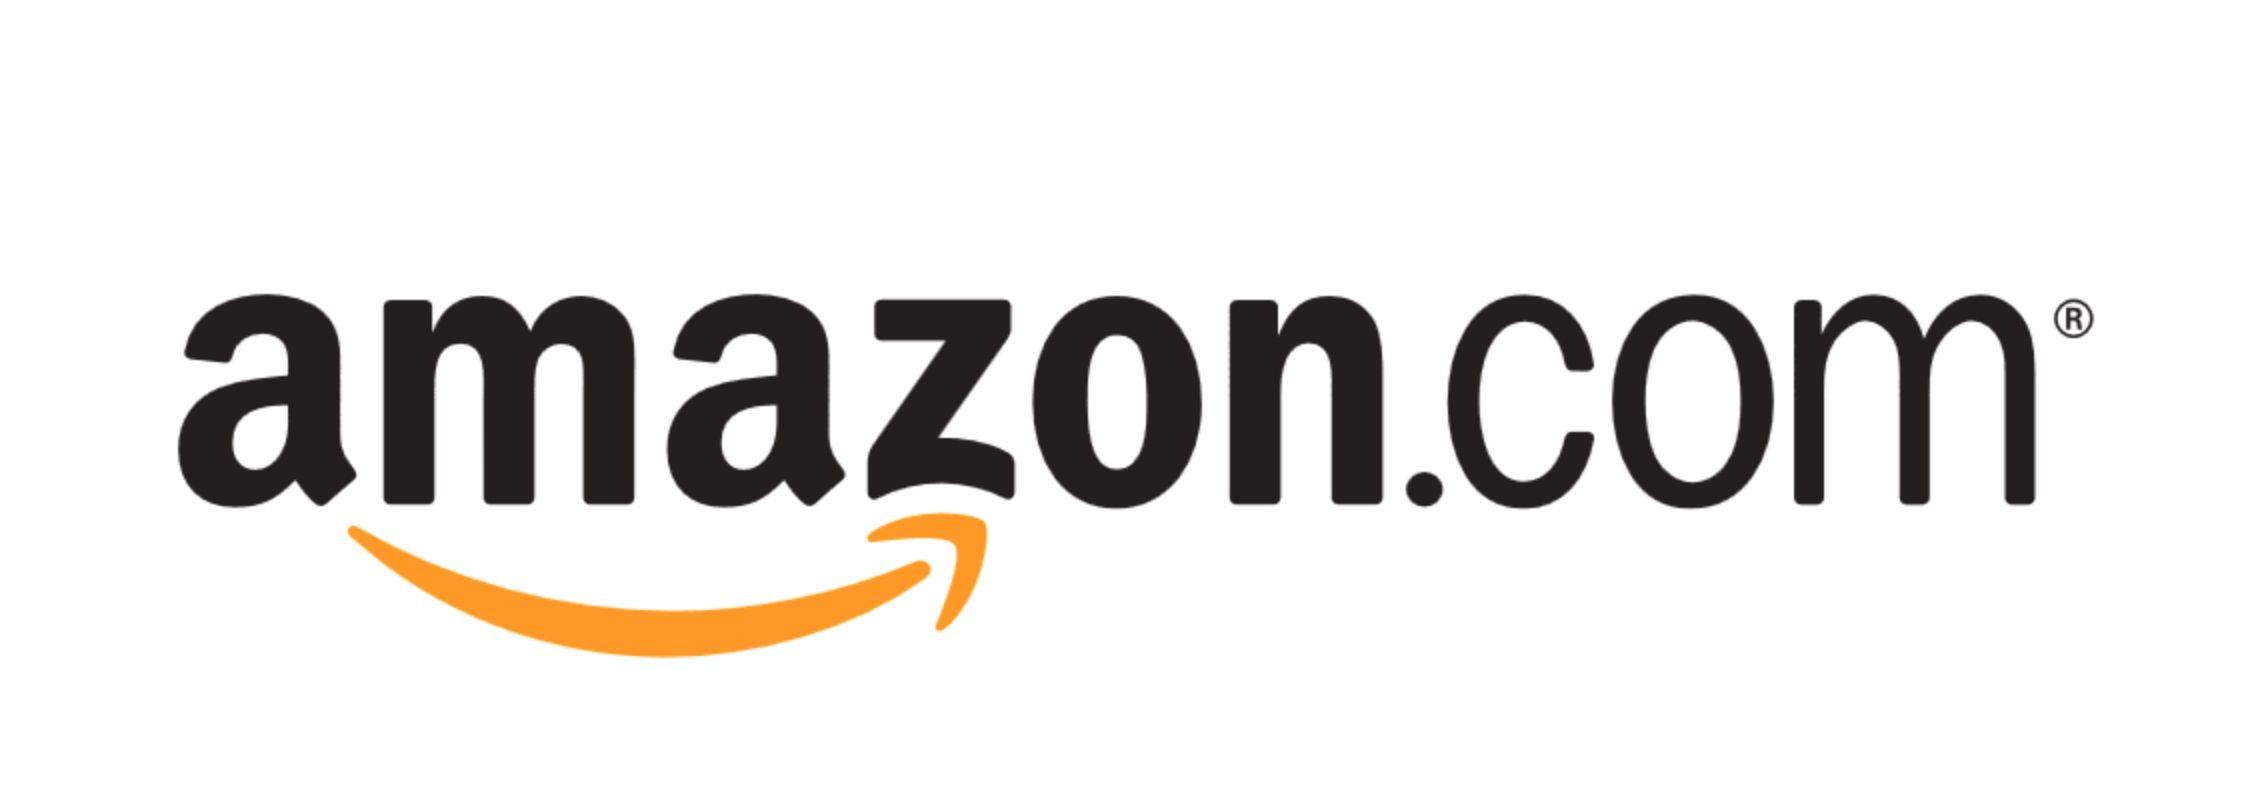 Search Amazon Logo - Amazon Logos